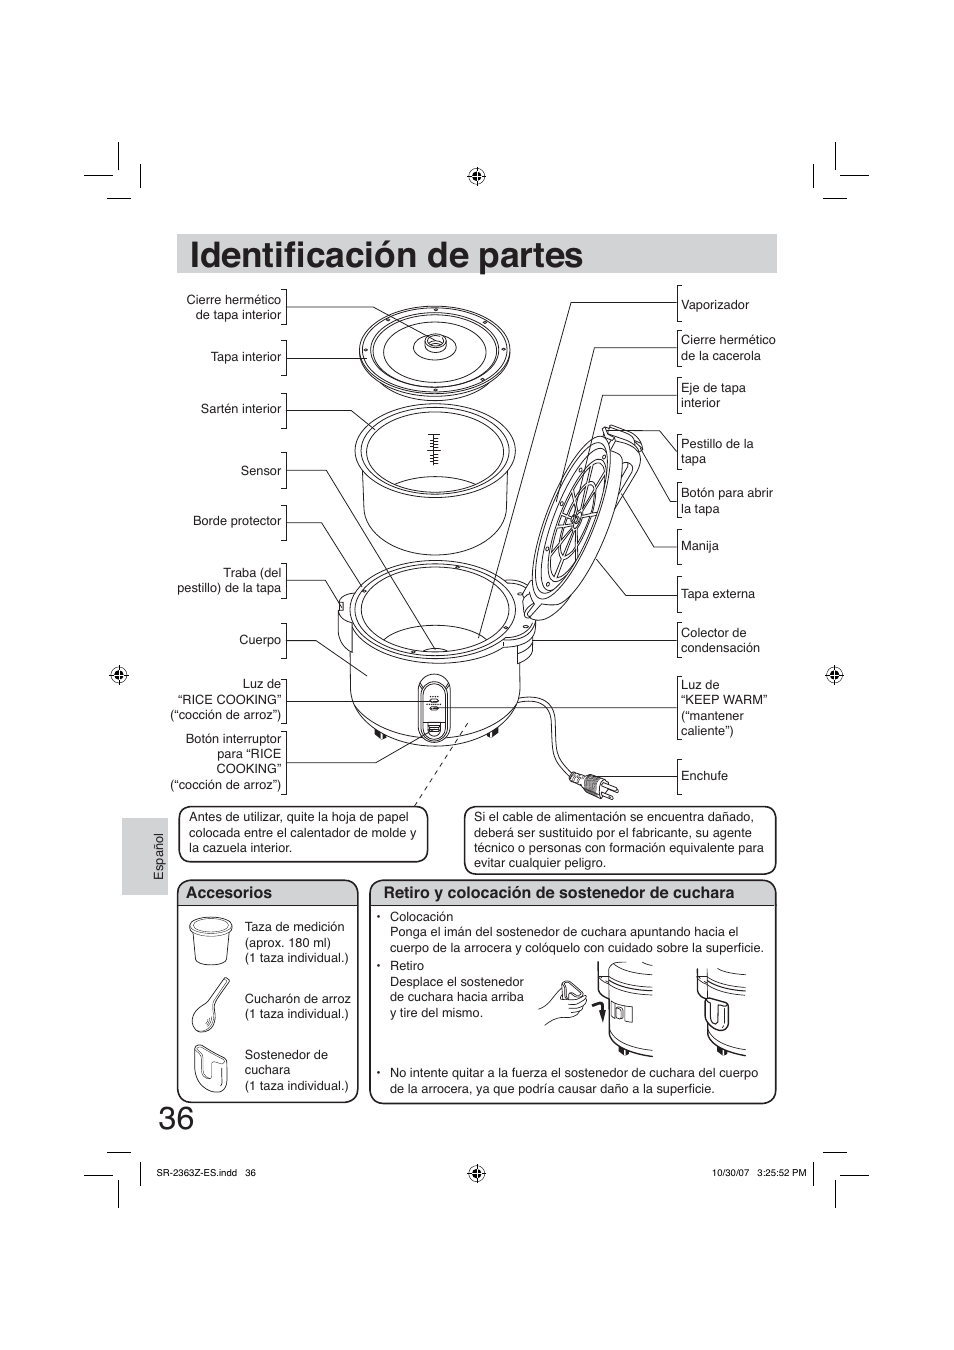 Identificación de partes, Identià cación de partes | Panasonic SR2363Z User Manual | Page 36 / 63